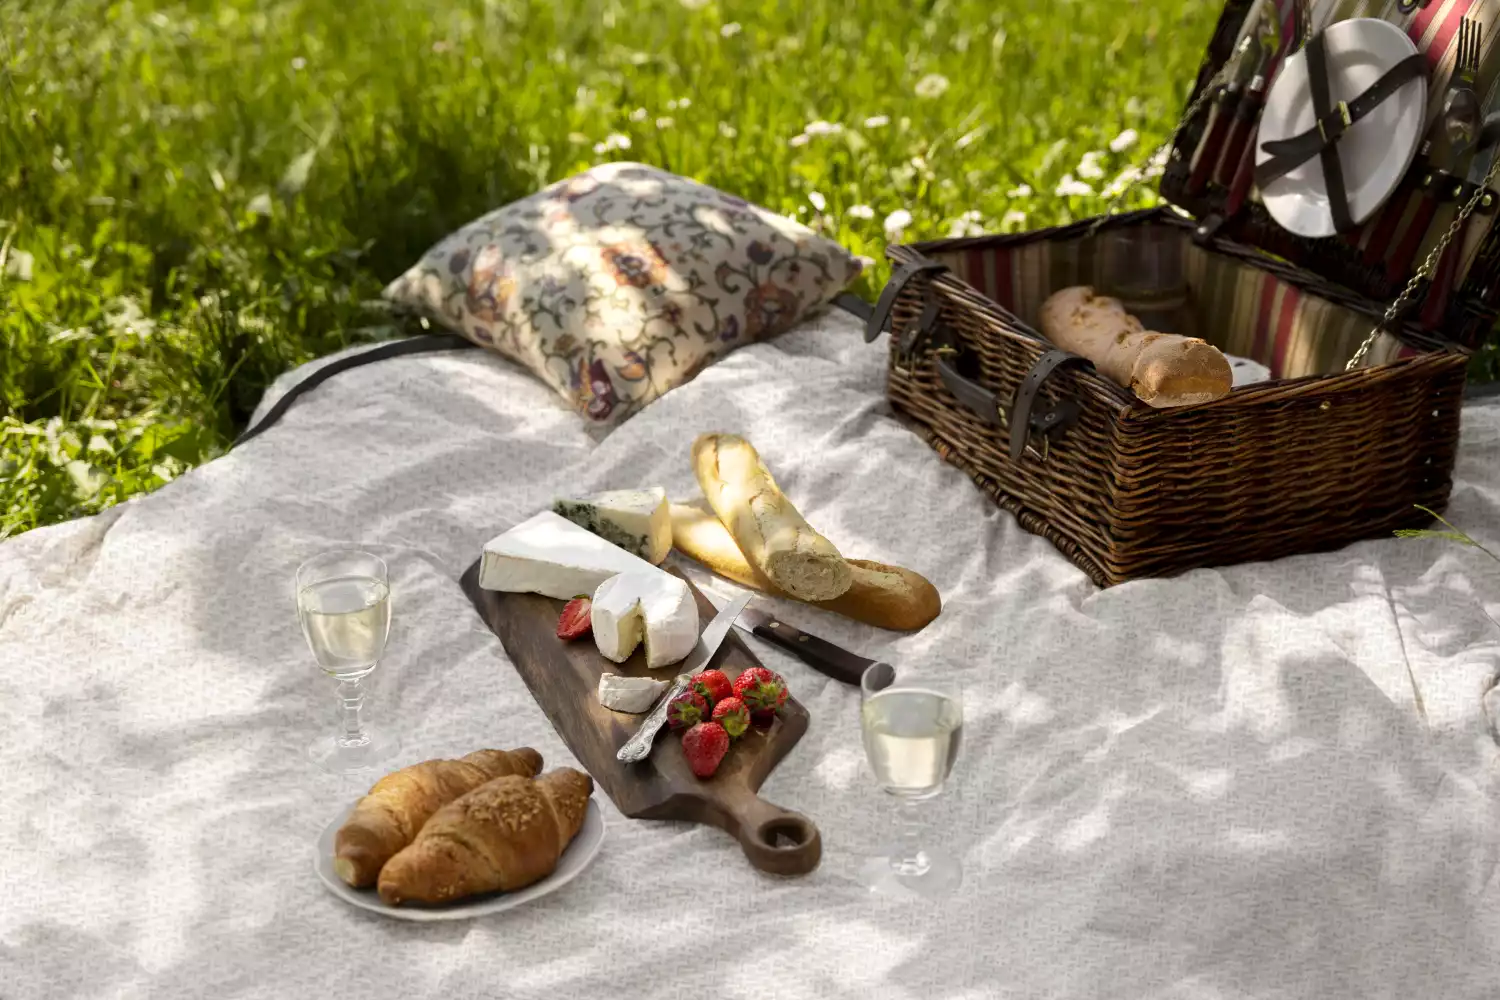 plain picnic blanket